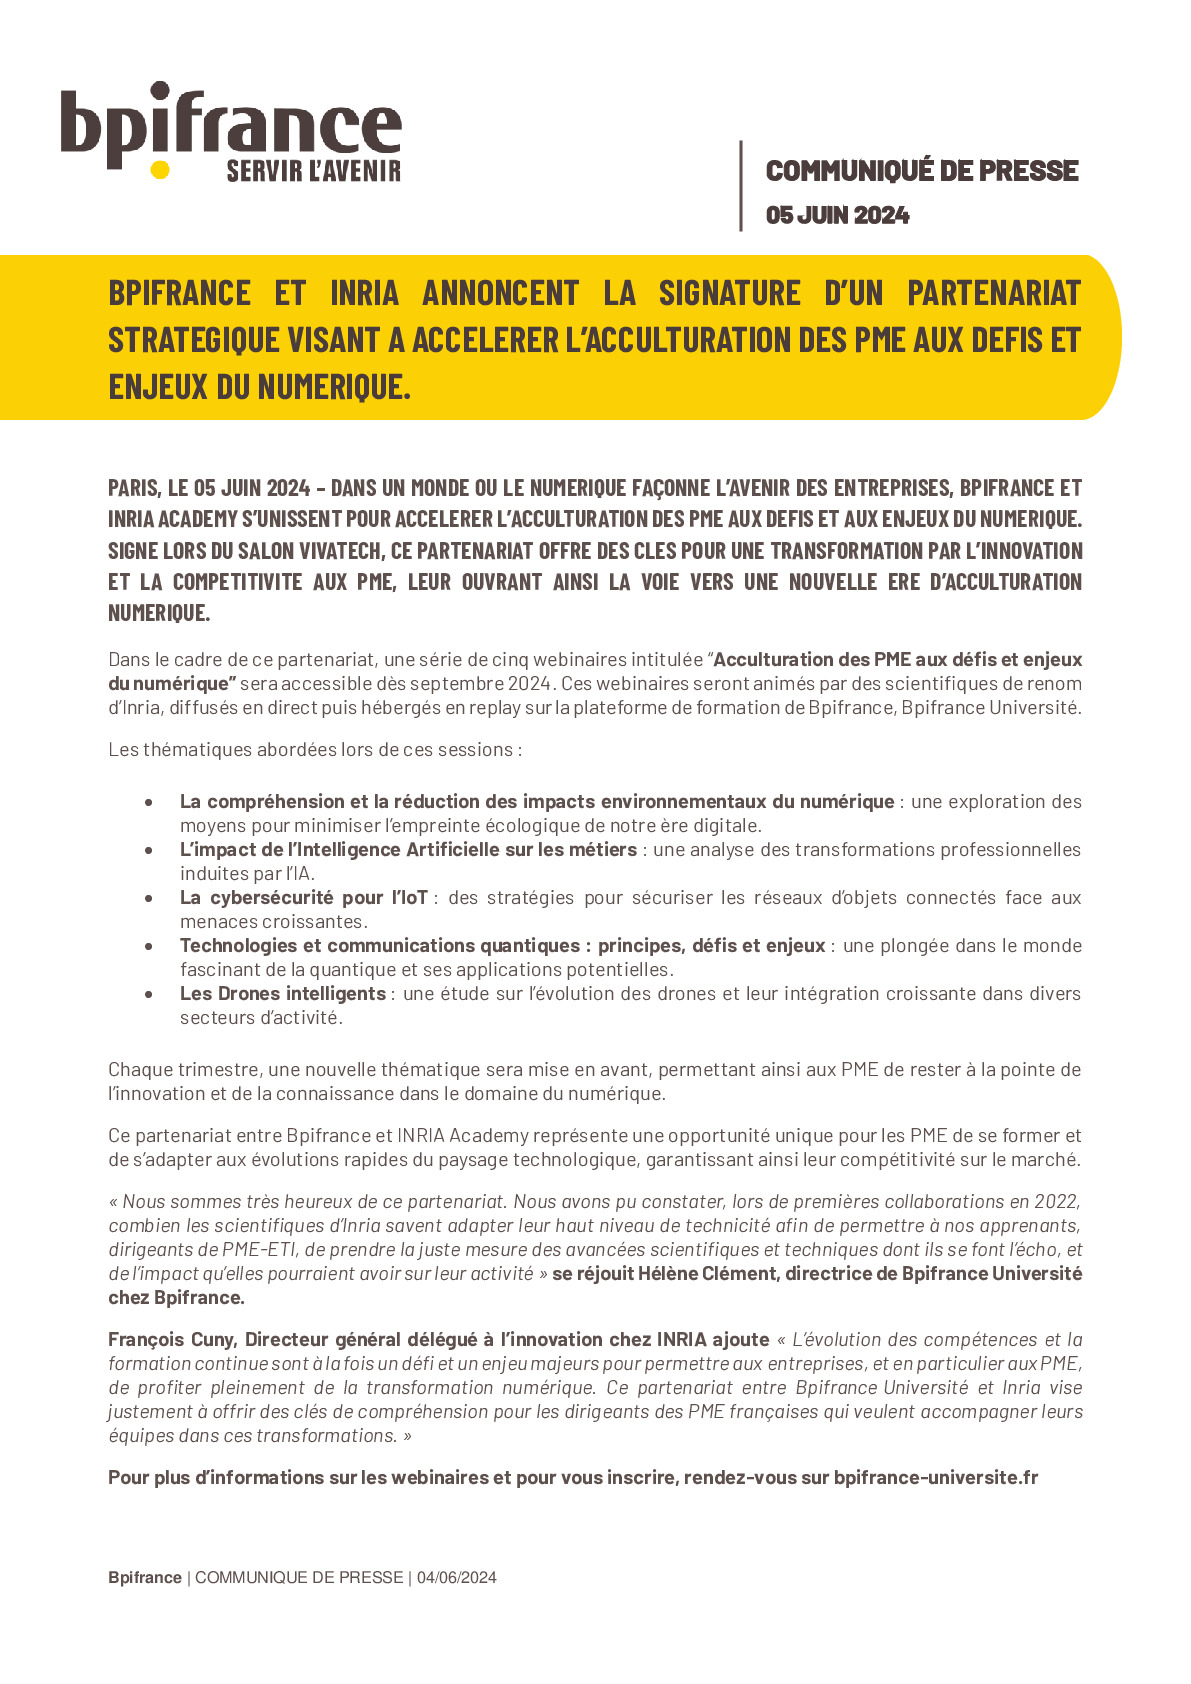 04 06 2024 – CP Bpifrance – Bpifrance et INRIA annoncent la signature d’un partenariat strtégique visant à accélérer l’acculturation des PME